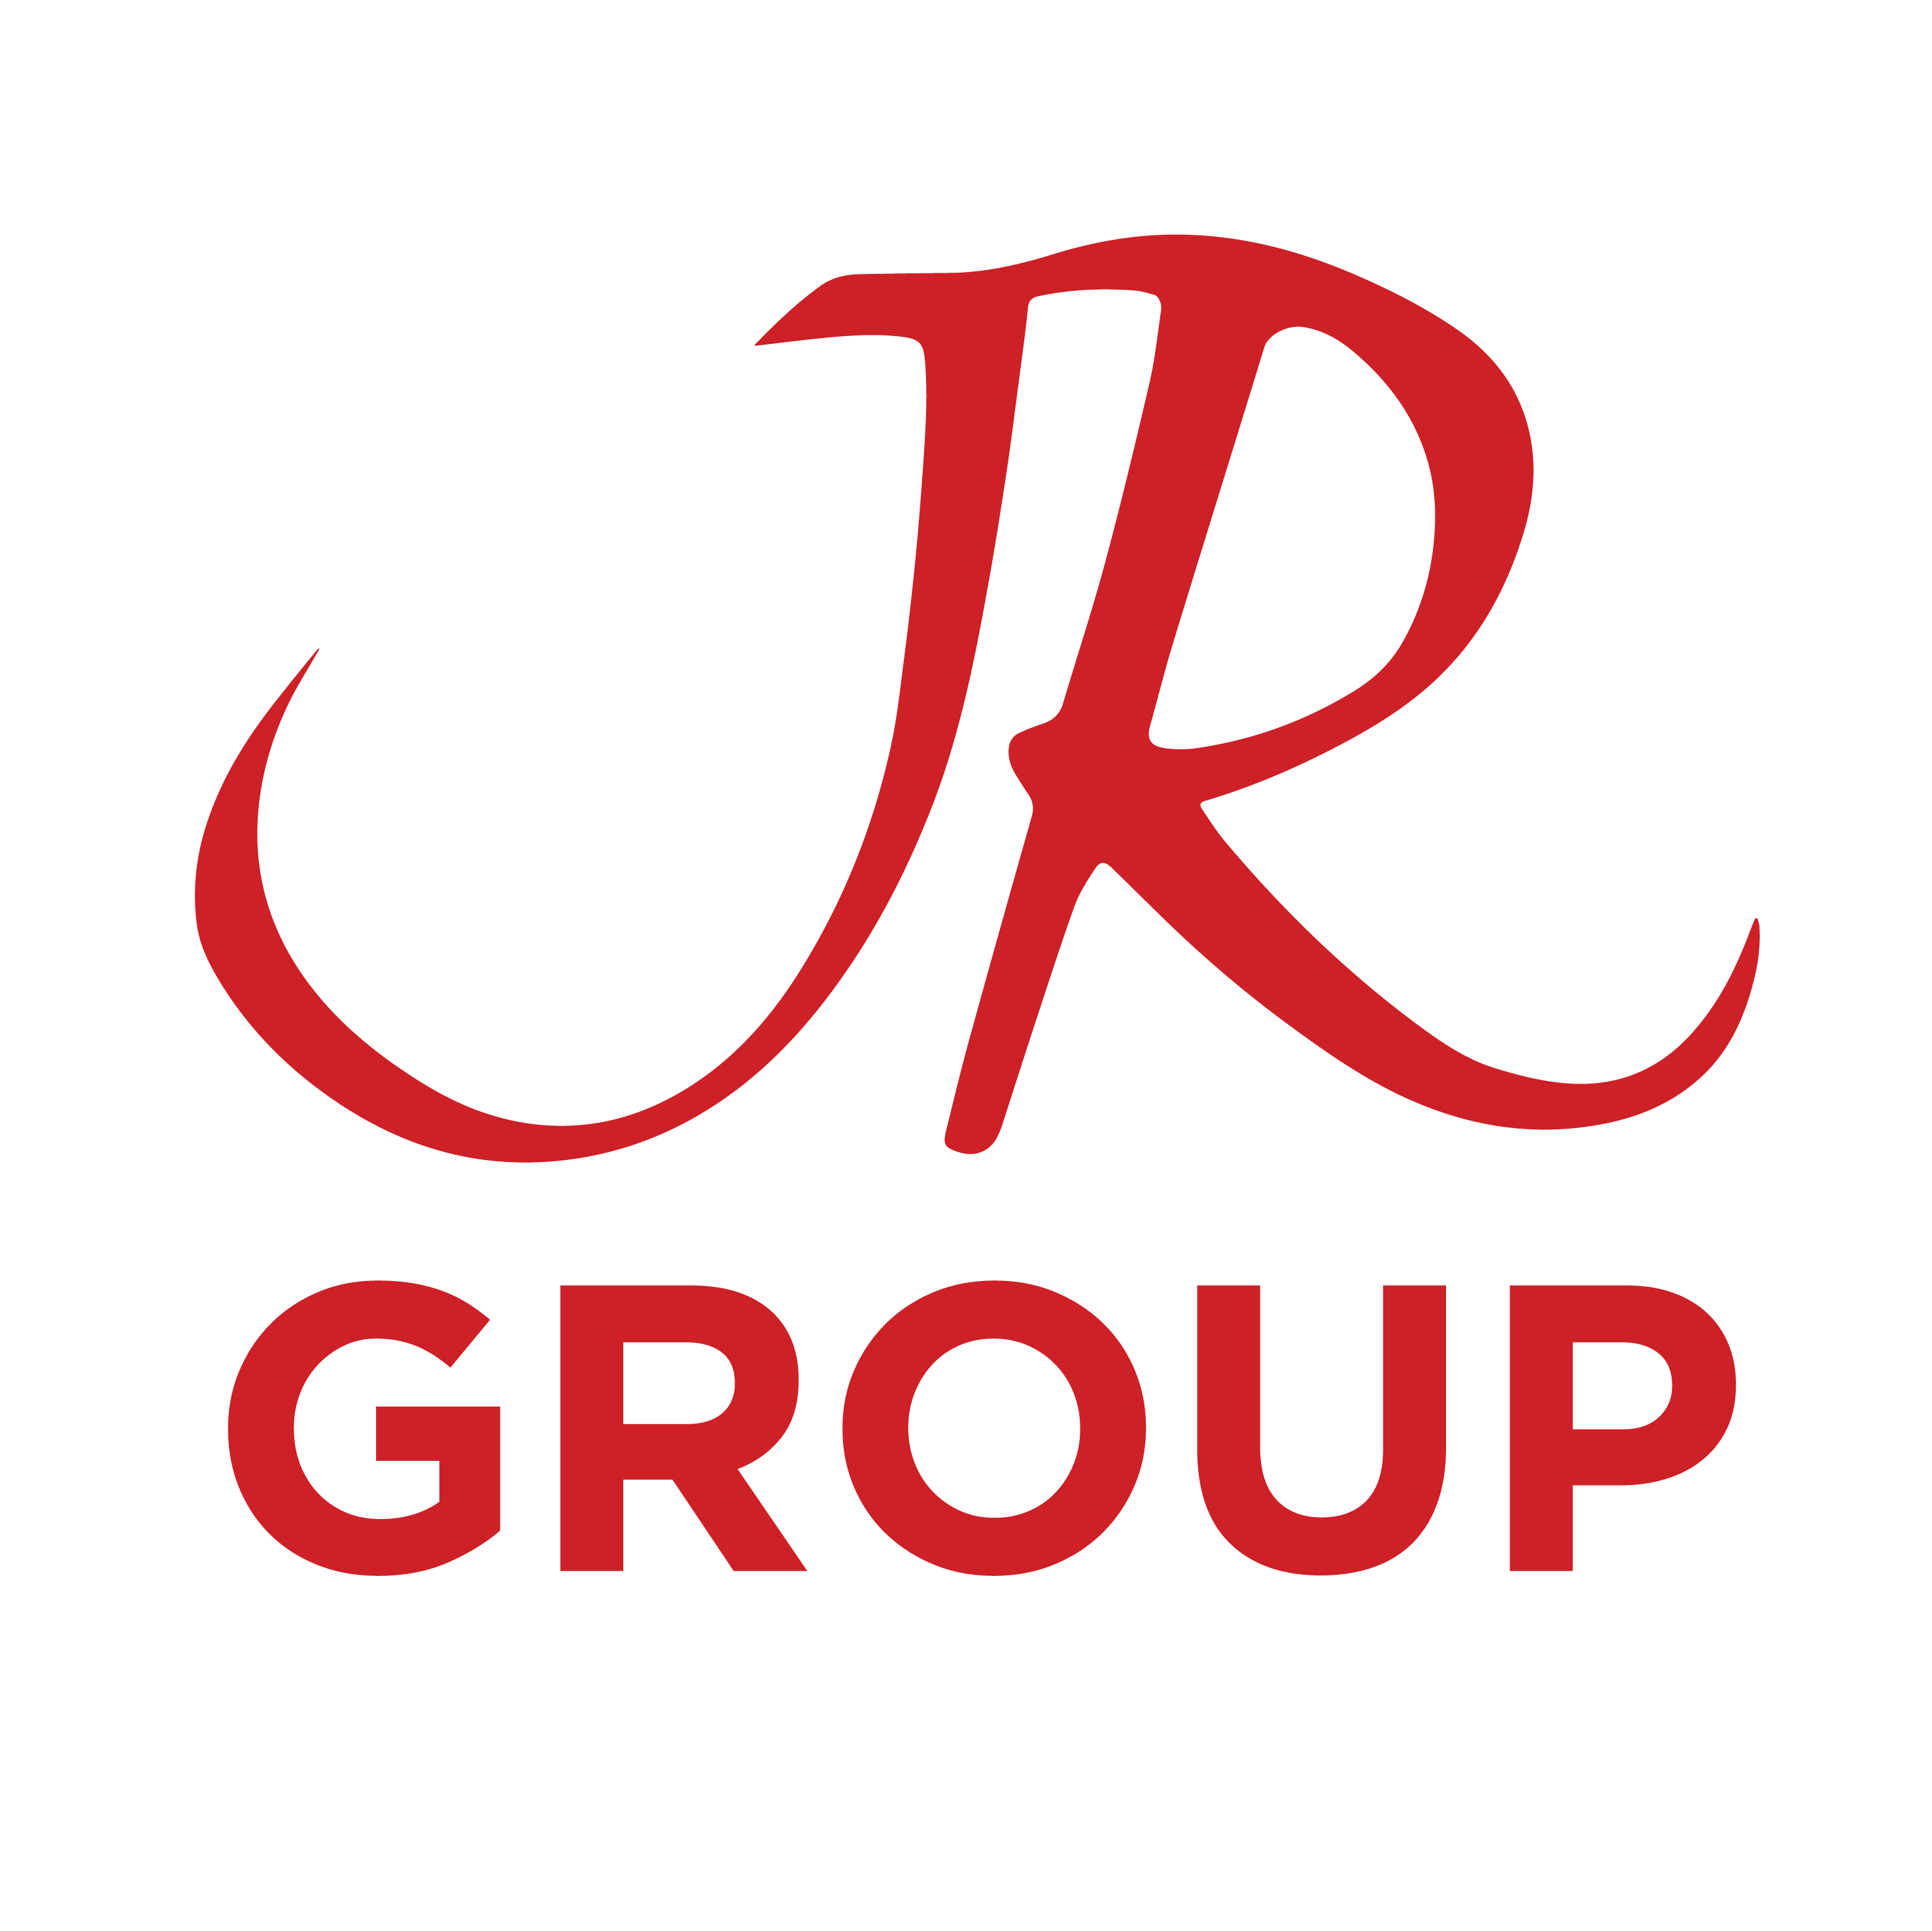 JR Group Holdings Pte Ltd